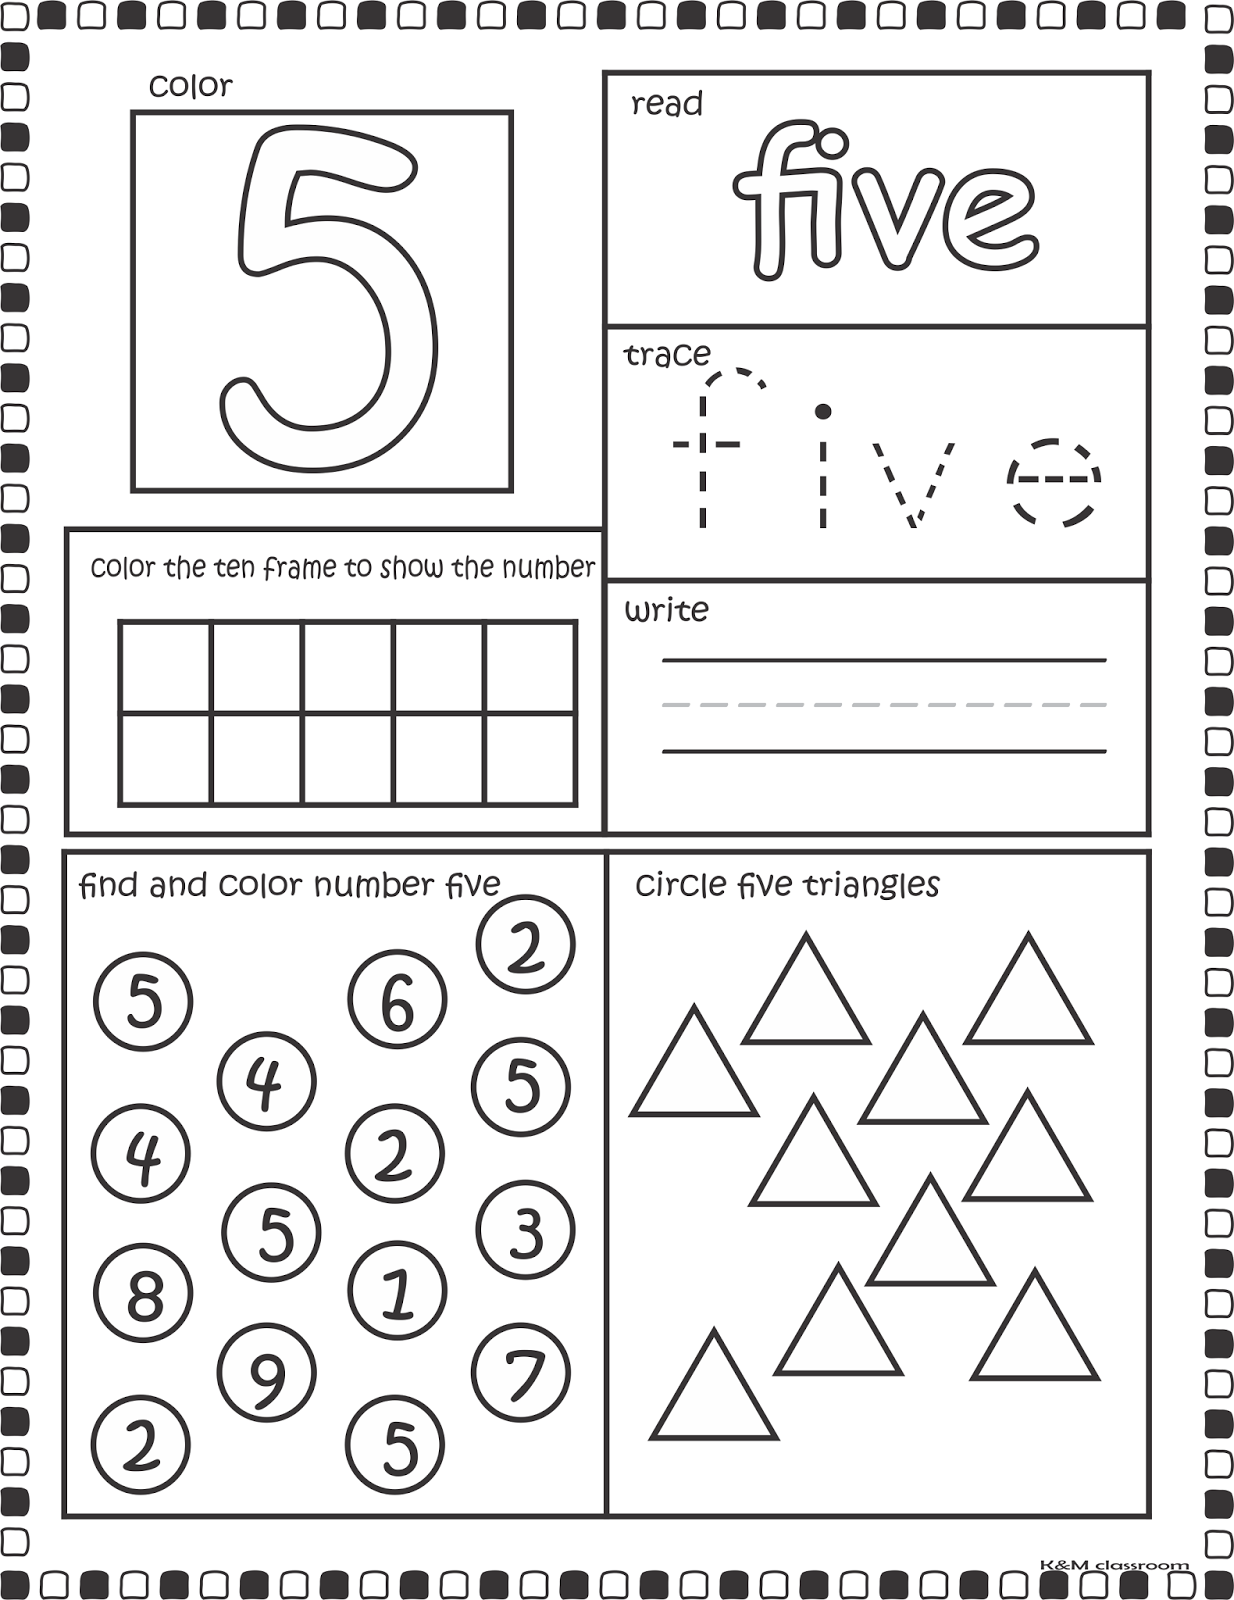 preschool-number-worksheets-1-10-numbers-1-to-10-interactive-activity-for-preschool-worksheet